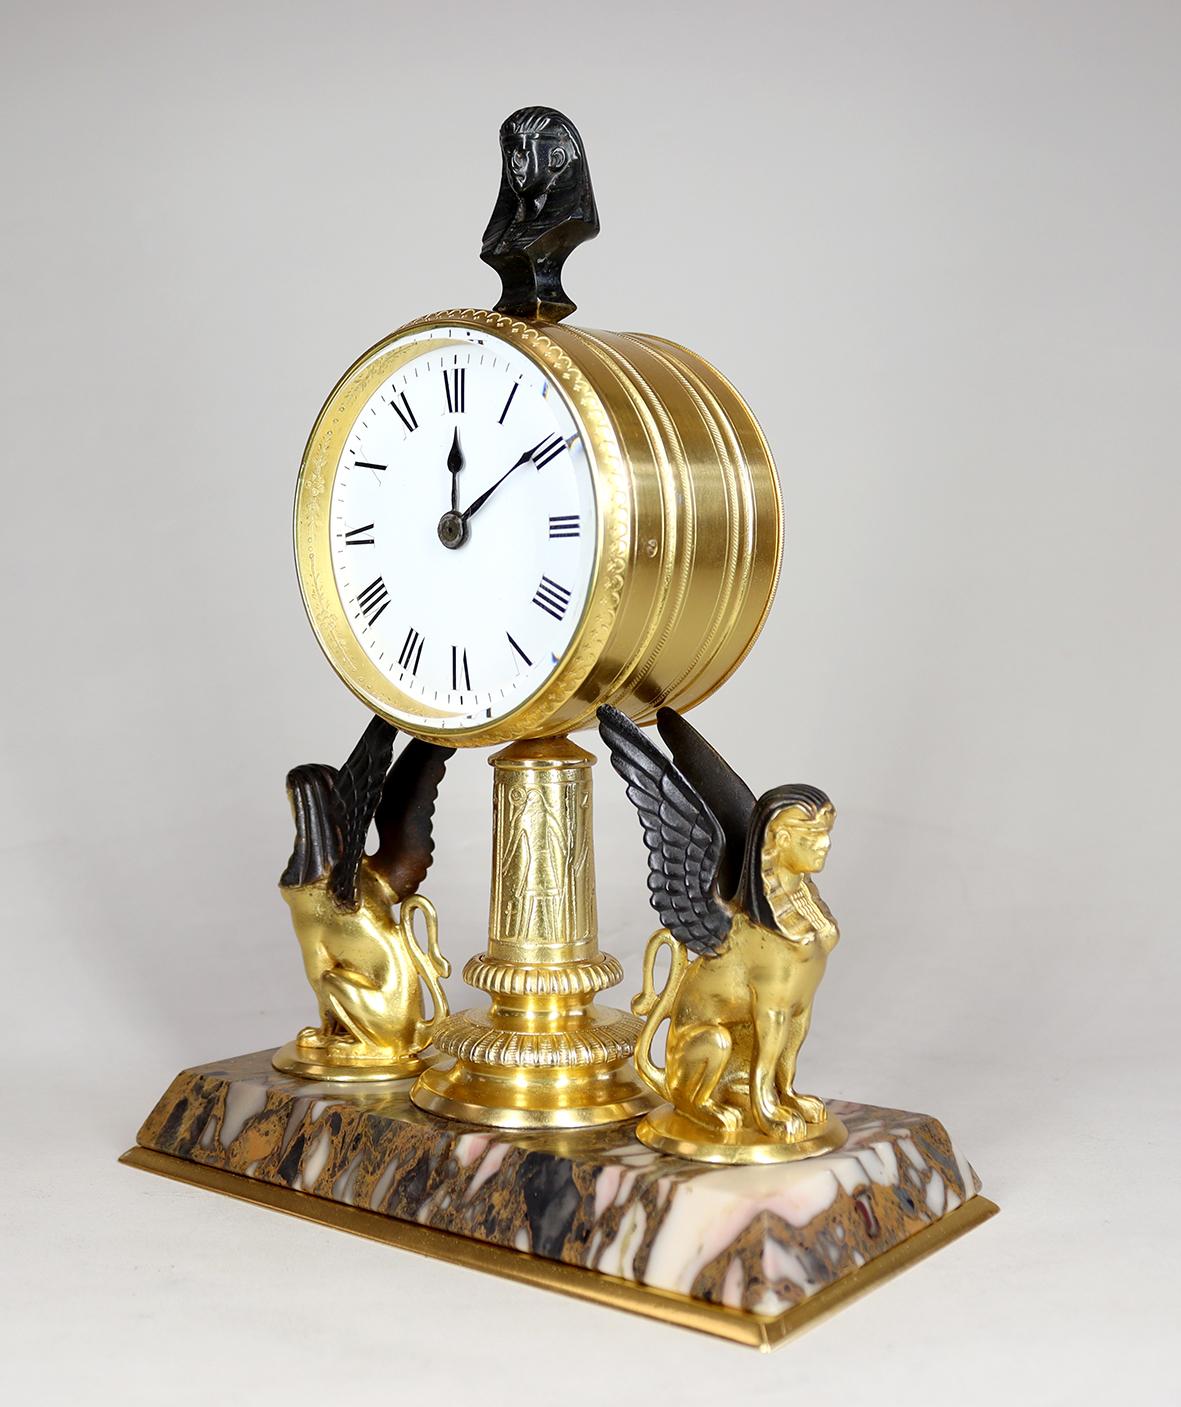 Pièce d'horlogerie de style égyptien dans un boîtier doré et bronzé. Le mouvement huit jours à quatre piliers avec échappement à cylindre est logé dans un boîtier tambour, monté derrière un cadran en émail blanc brillant avec chiffres romains et